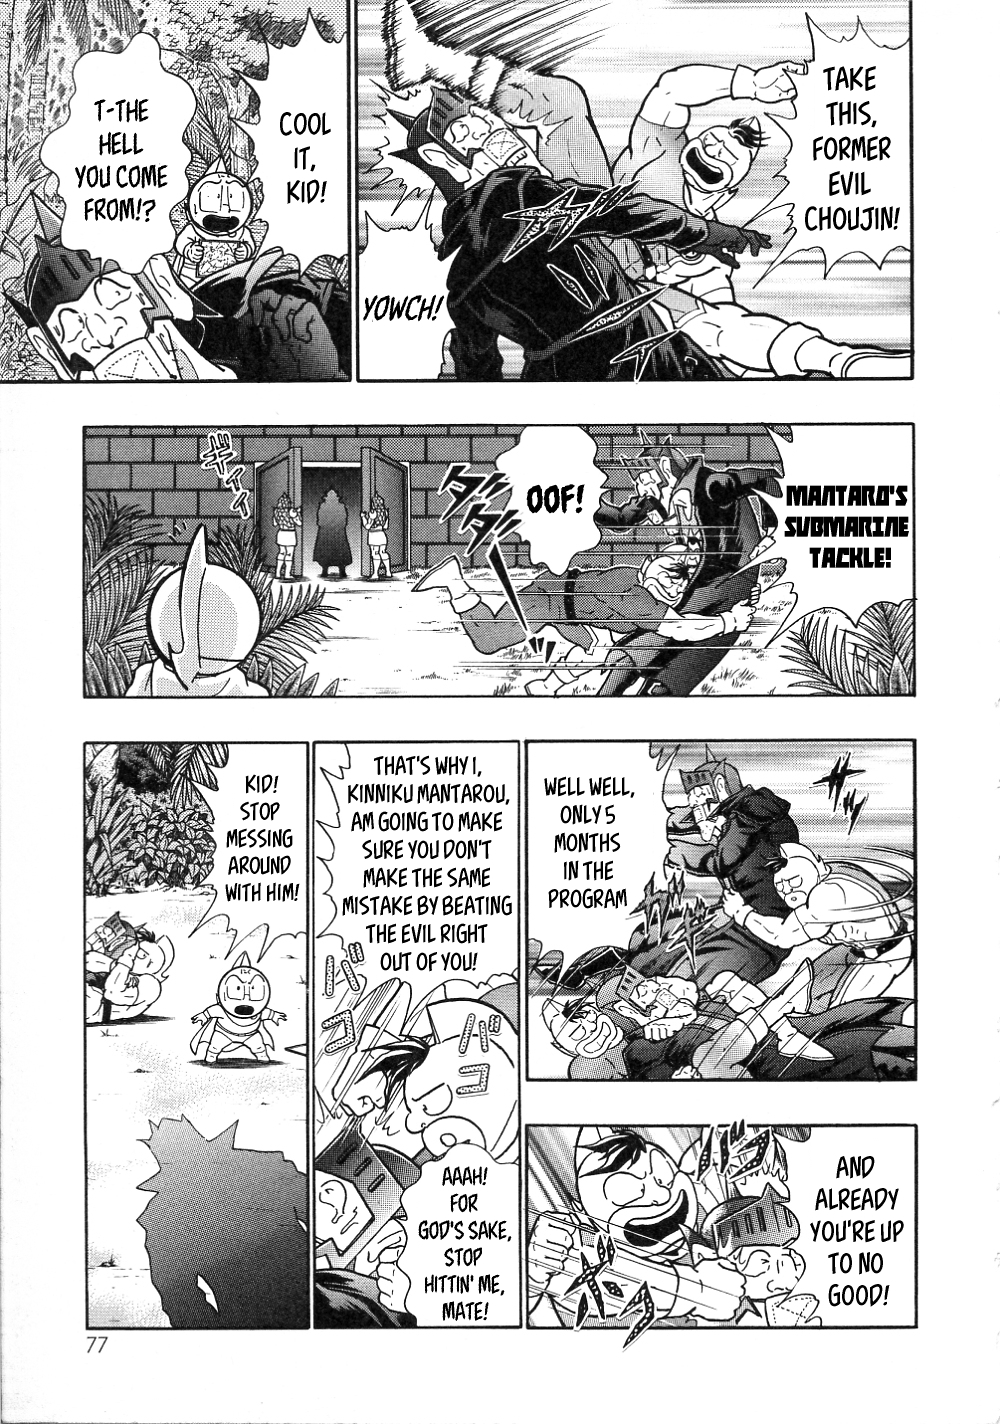 Kinnikuman II Sei: All Choujin Daishingeki Vol. 1 Ch. 7 Brutal Choujin? Kevin Mask!